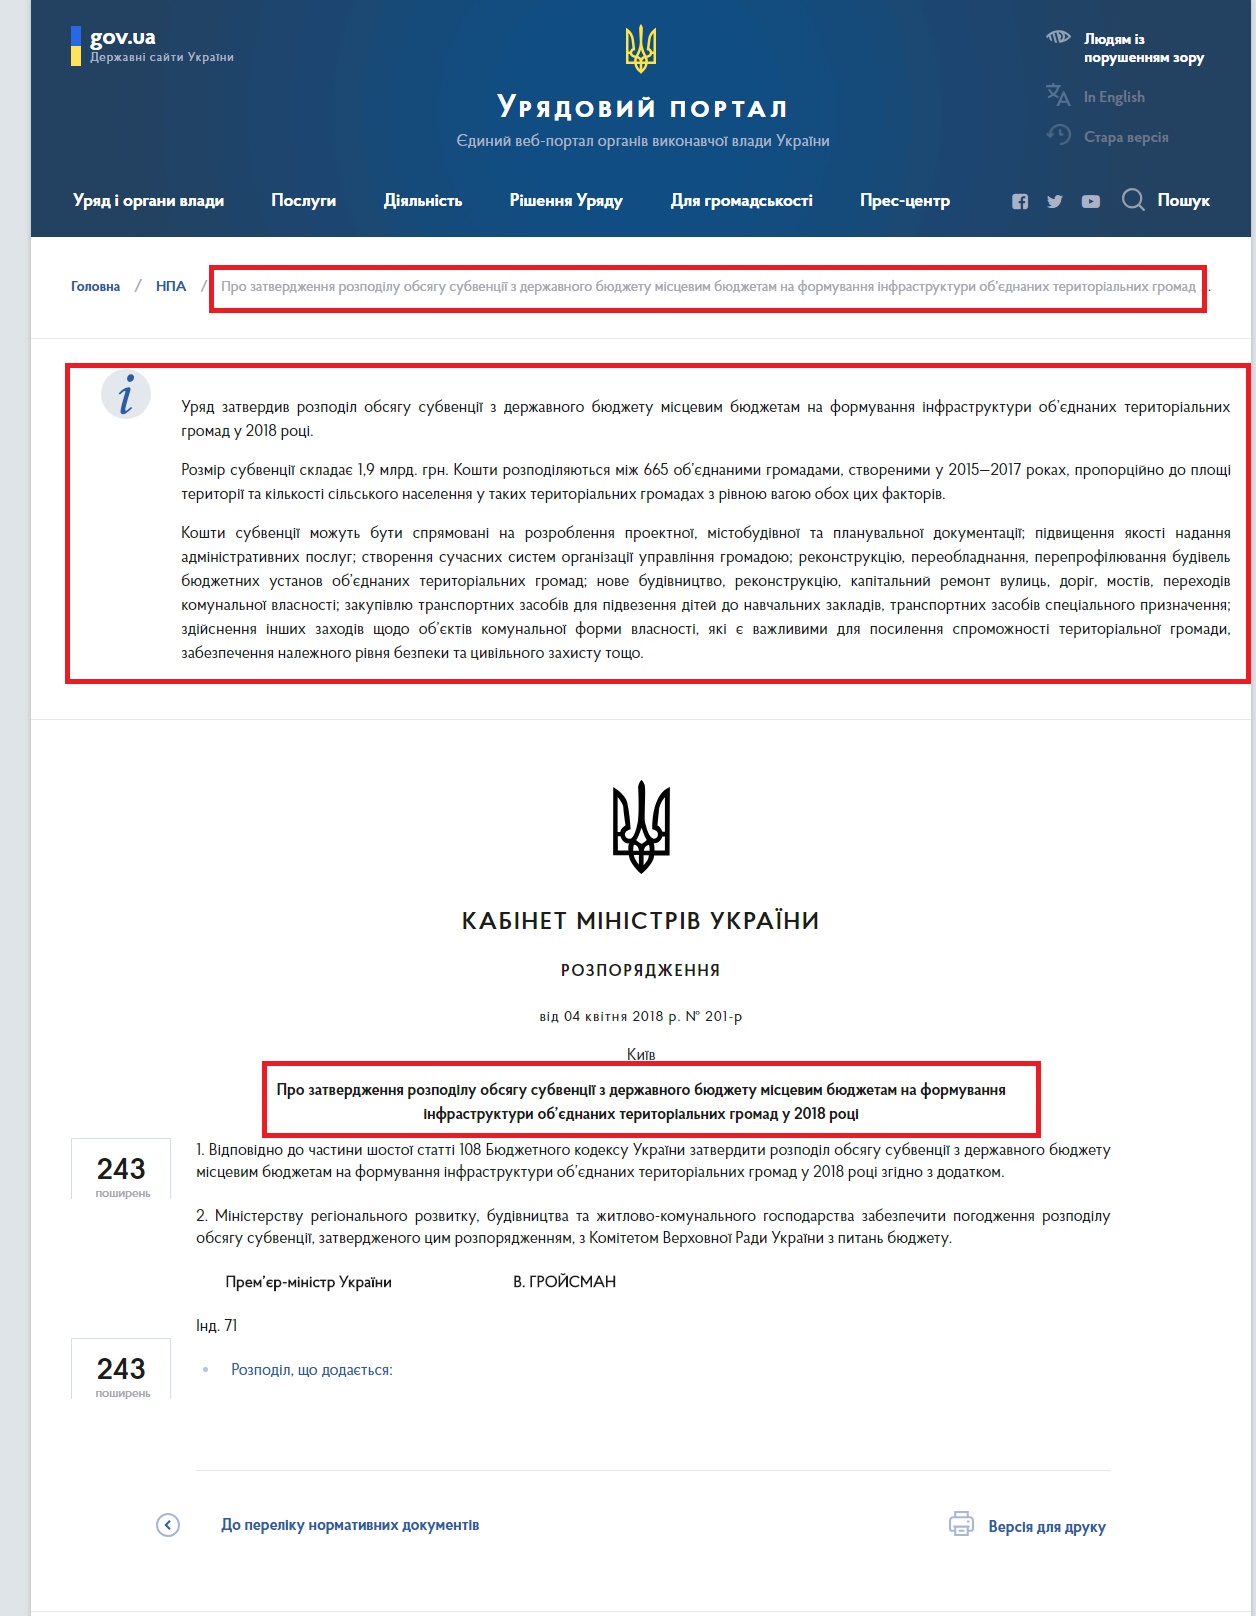 https://www.kmu.gov.ua/ua/npas/pro-zatverdzhennya-rozpod